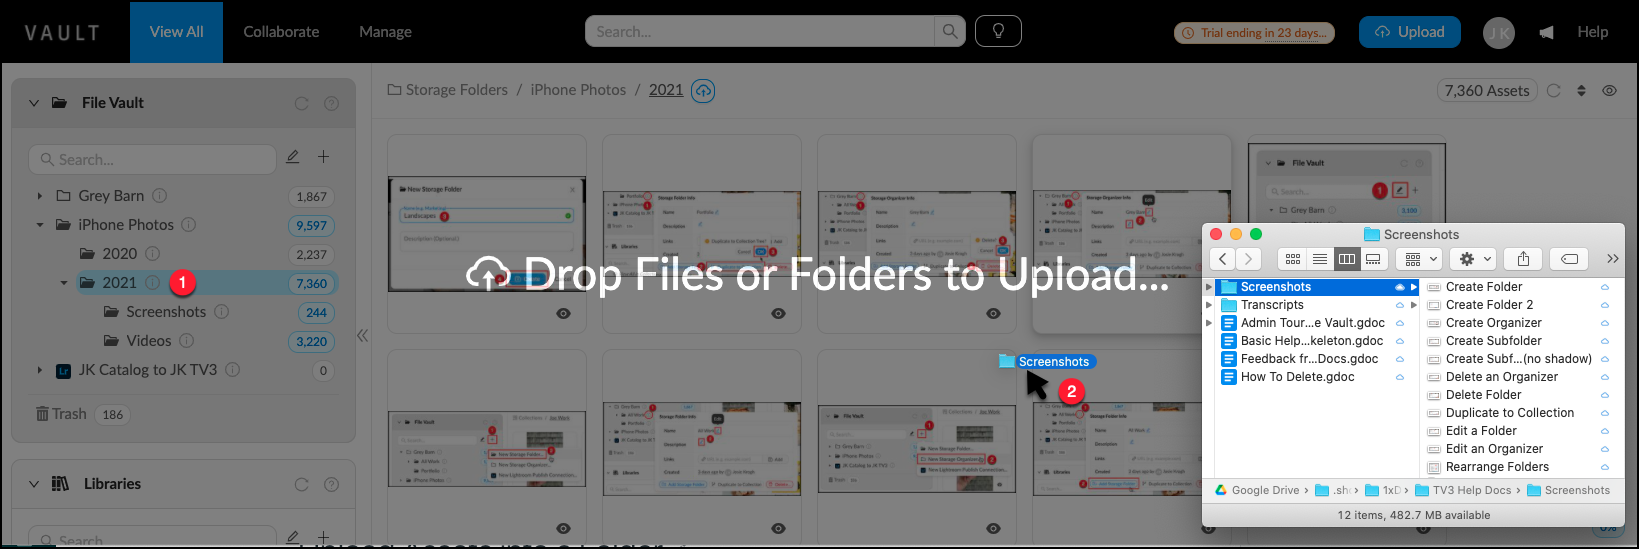 Upload_to_Folder_-_Drag.png